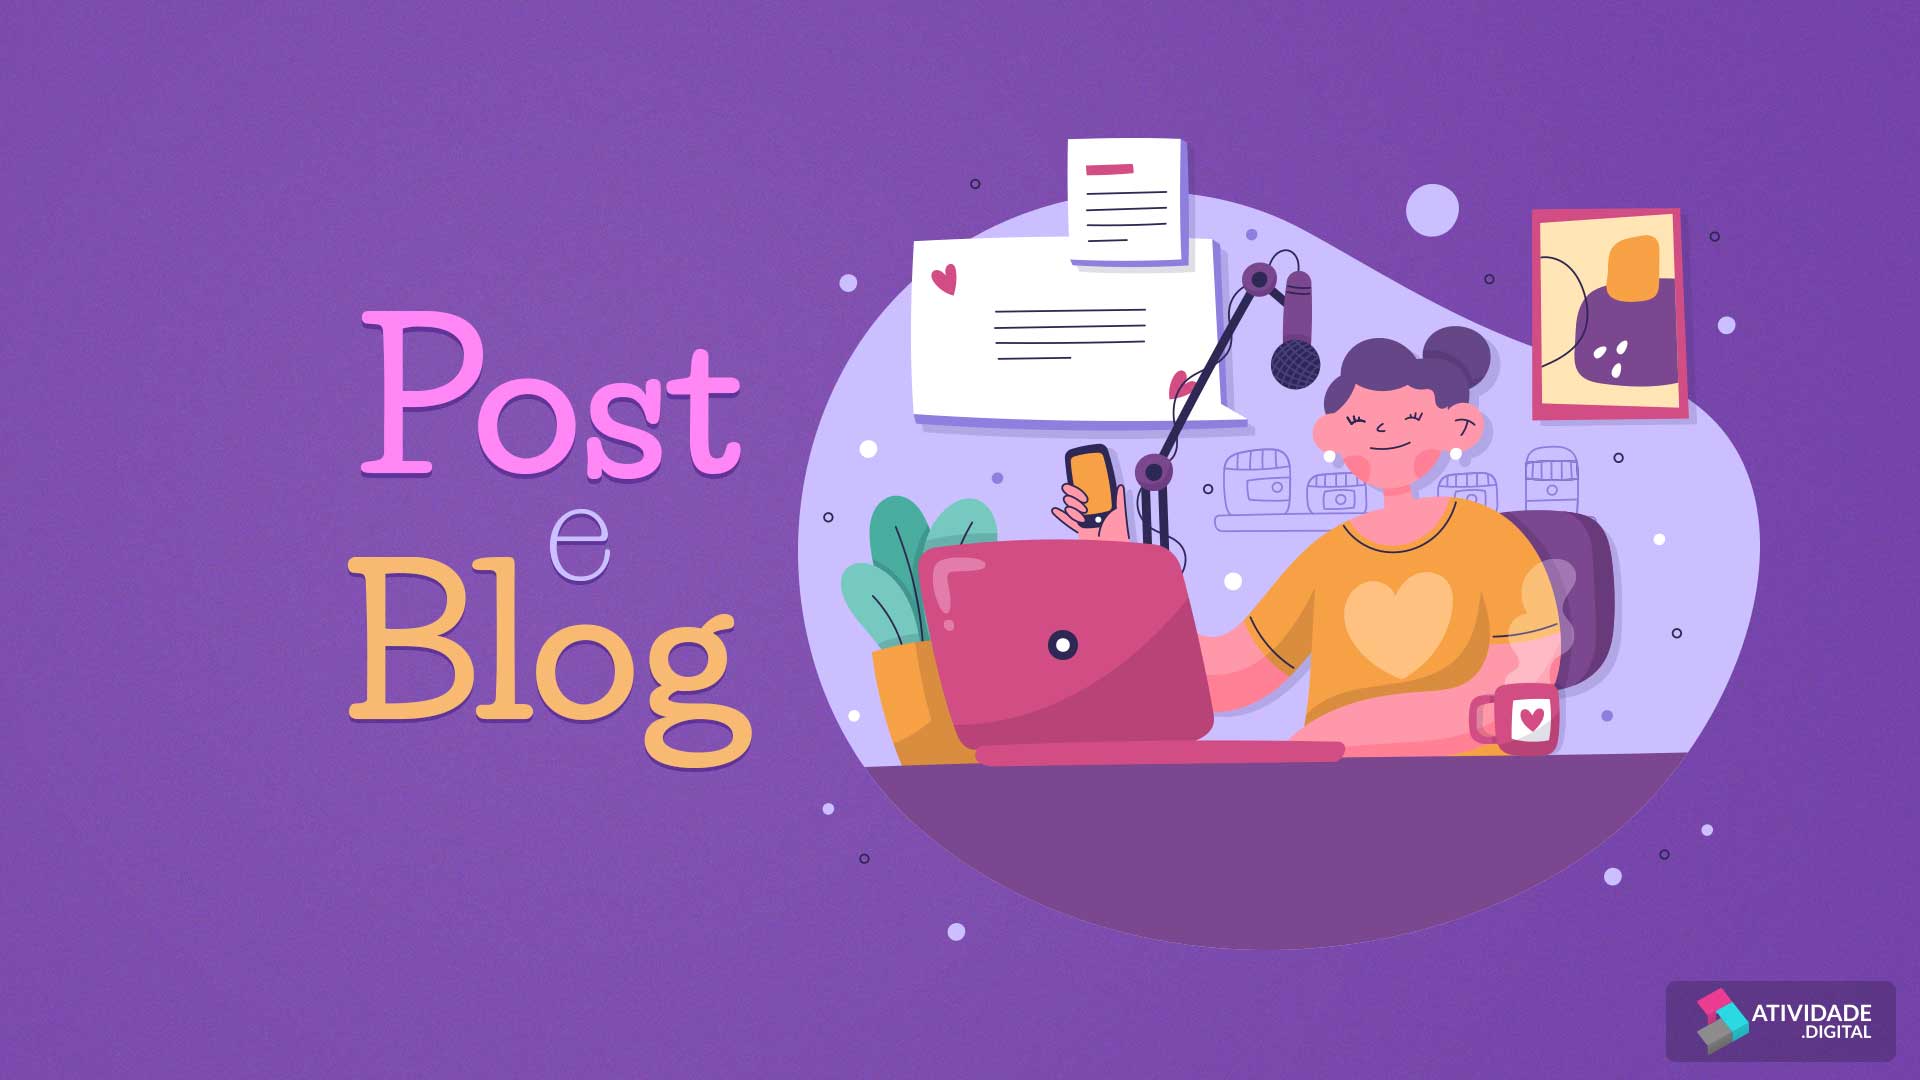 Post e Blog 